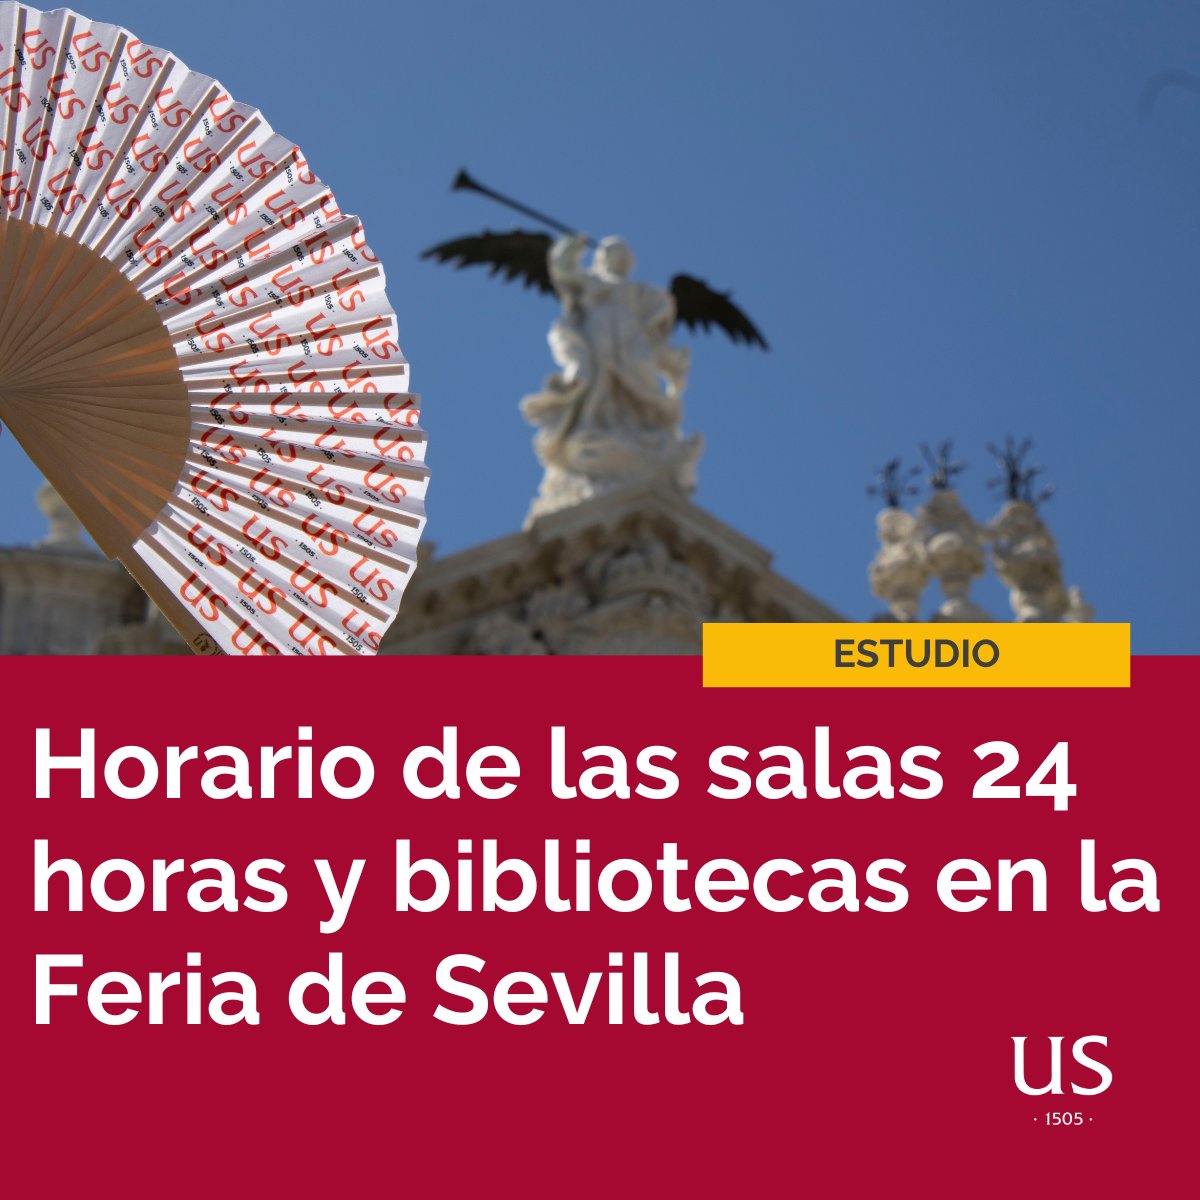 🎒 Consulta y guarda ya los horarios de las salas y las @Biblioteca_US para el periodo de #FeriaSevilla24 ℹ tinyurl.com/HsalasBibFeria… | @twitCADUS